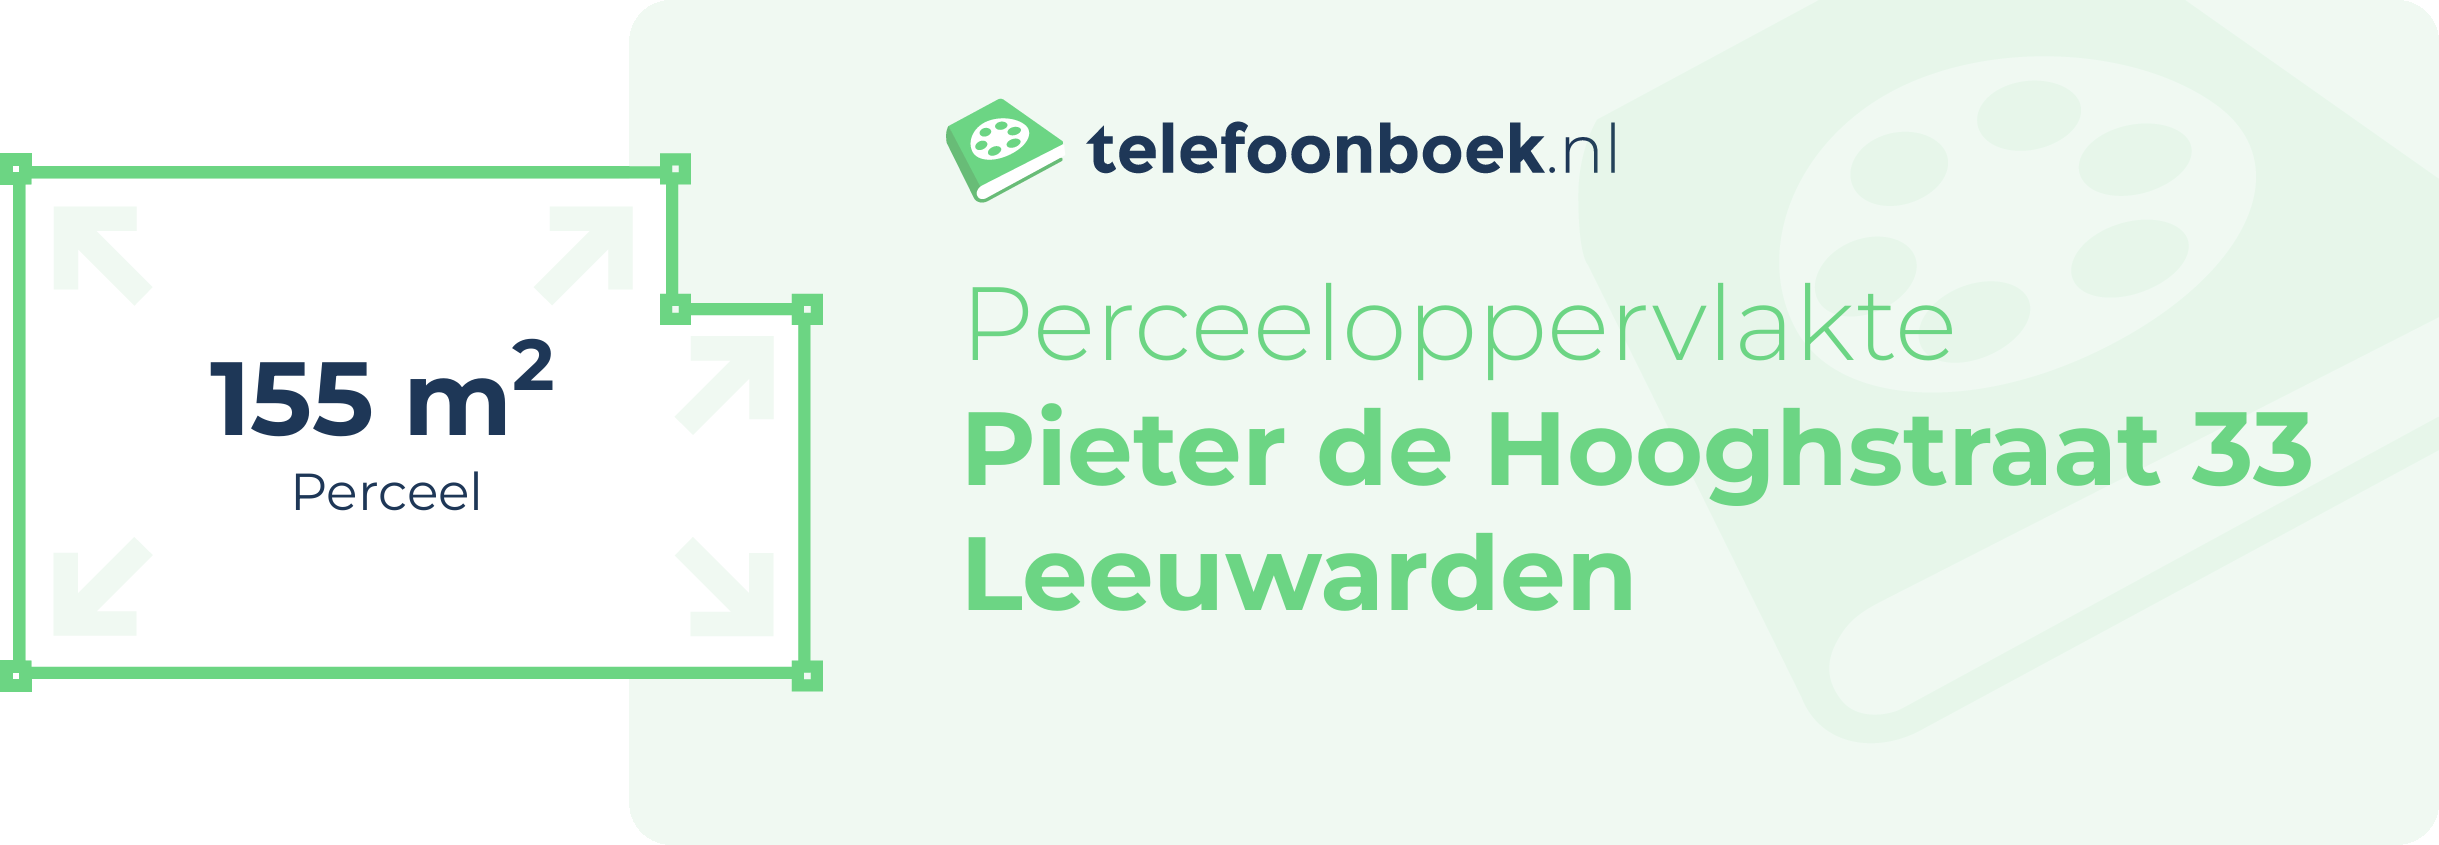 Perceeloppervlakte Pieter De Hooghstraat 33 Leeuwarden